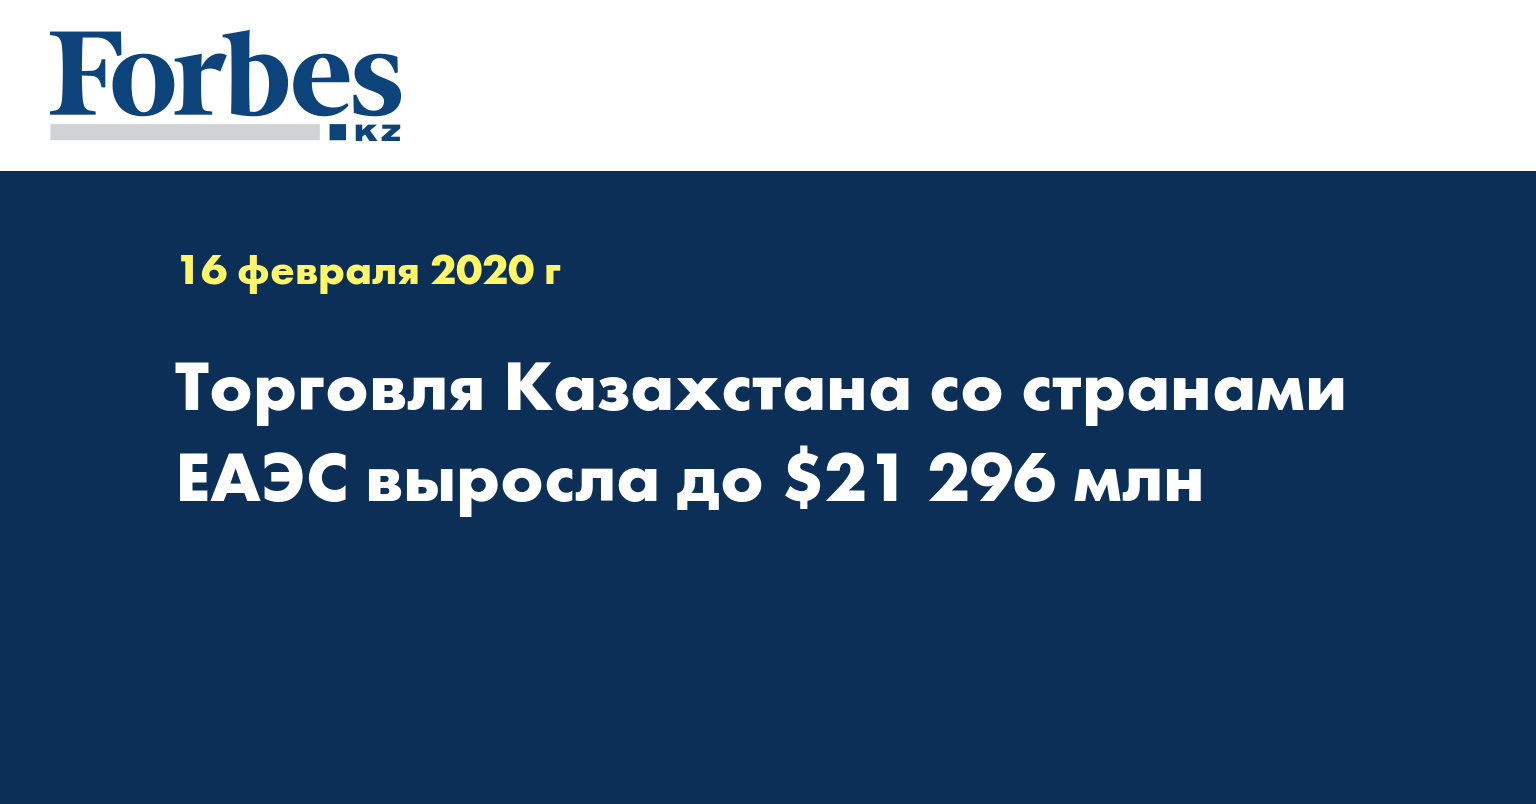 Торговля Казахстана со странами ЕАЭС выросла до $21 296 млн  